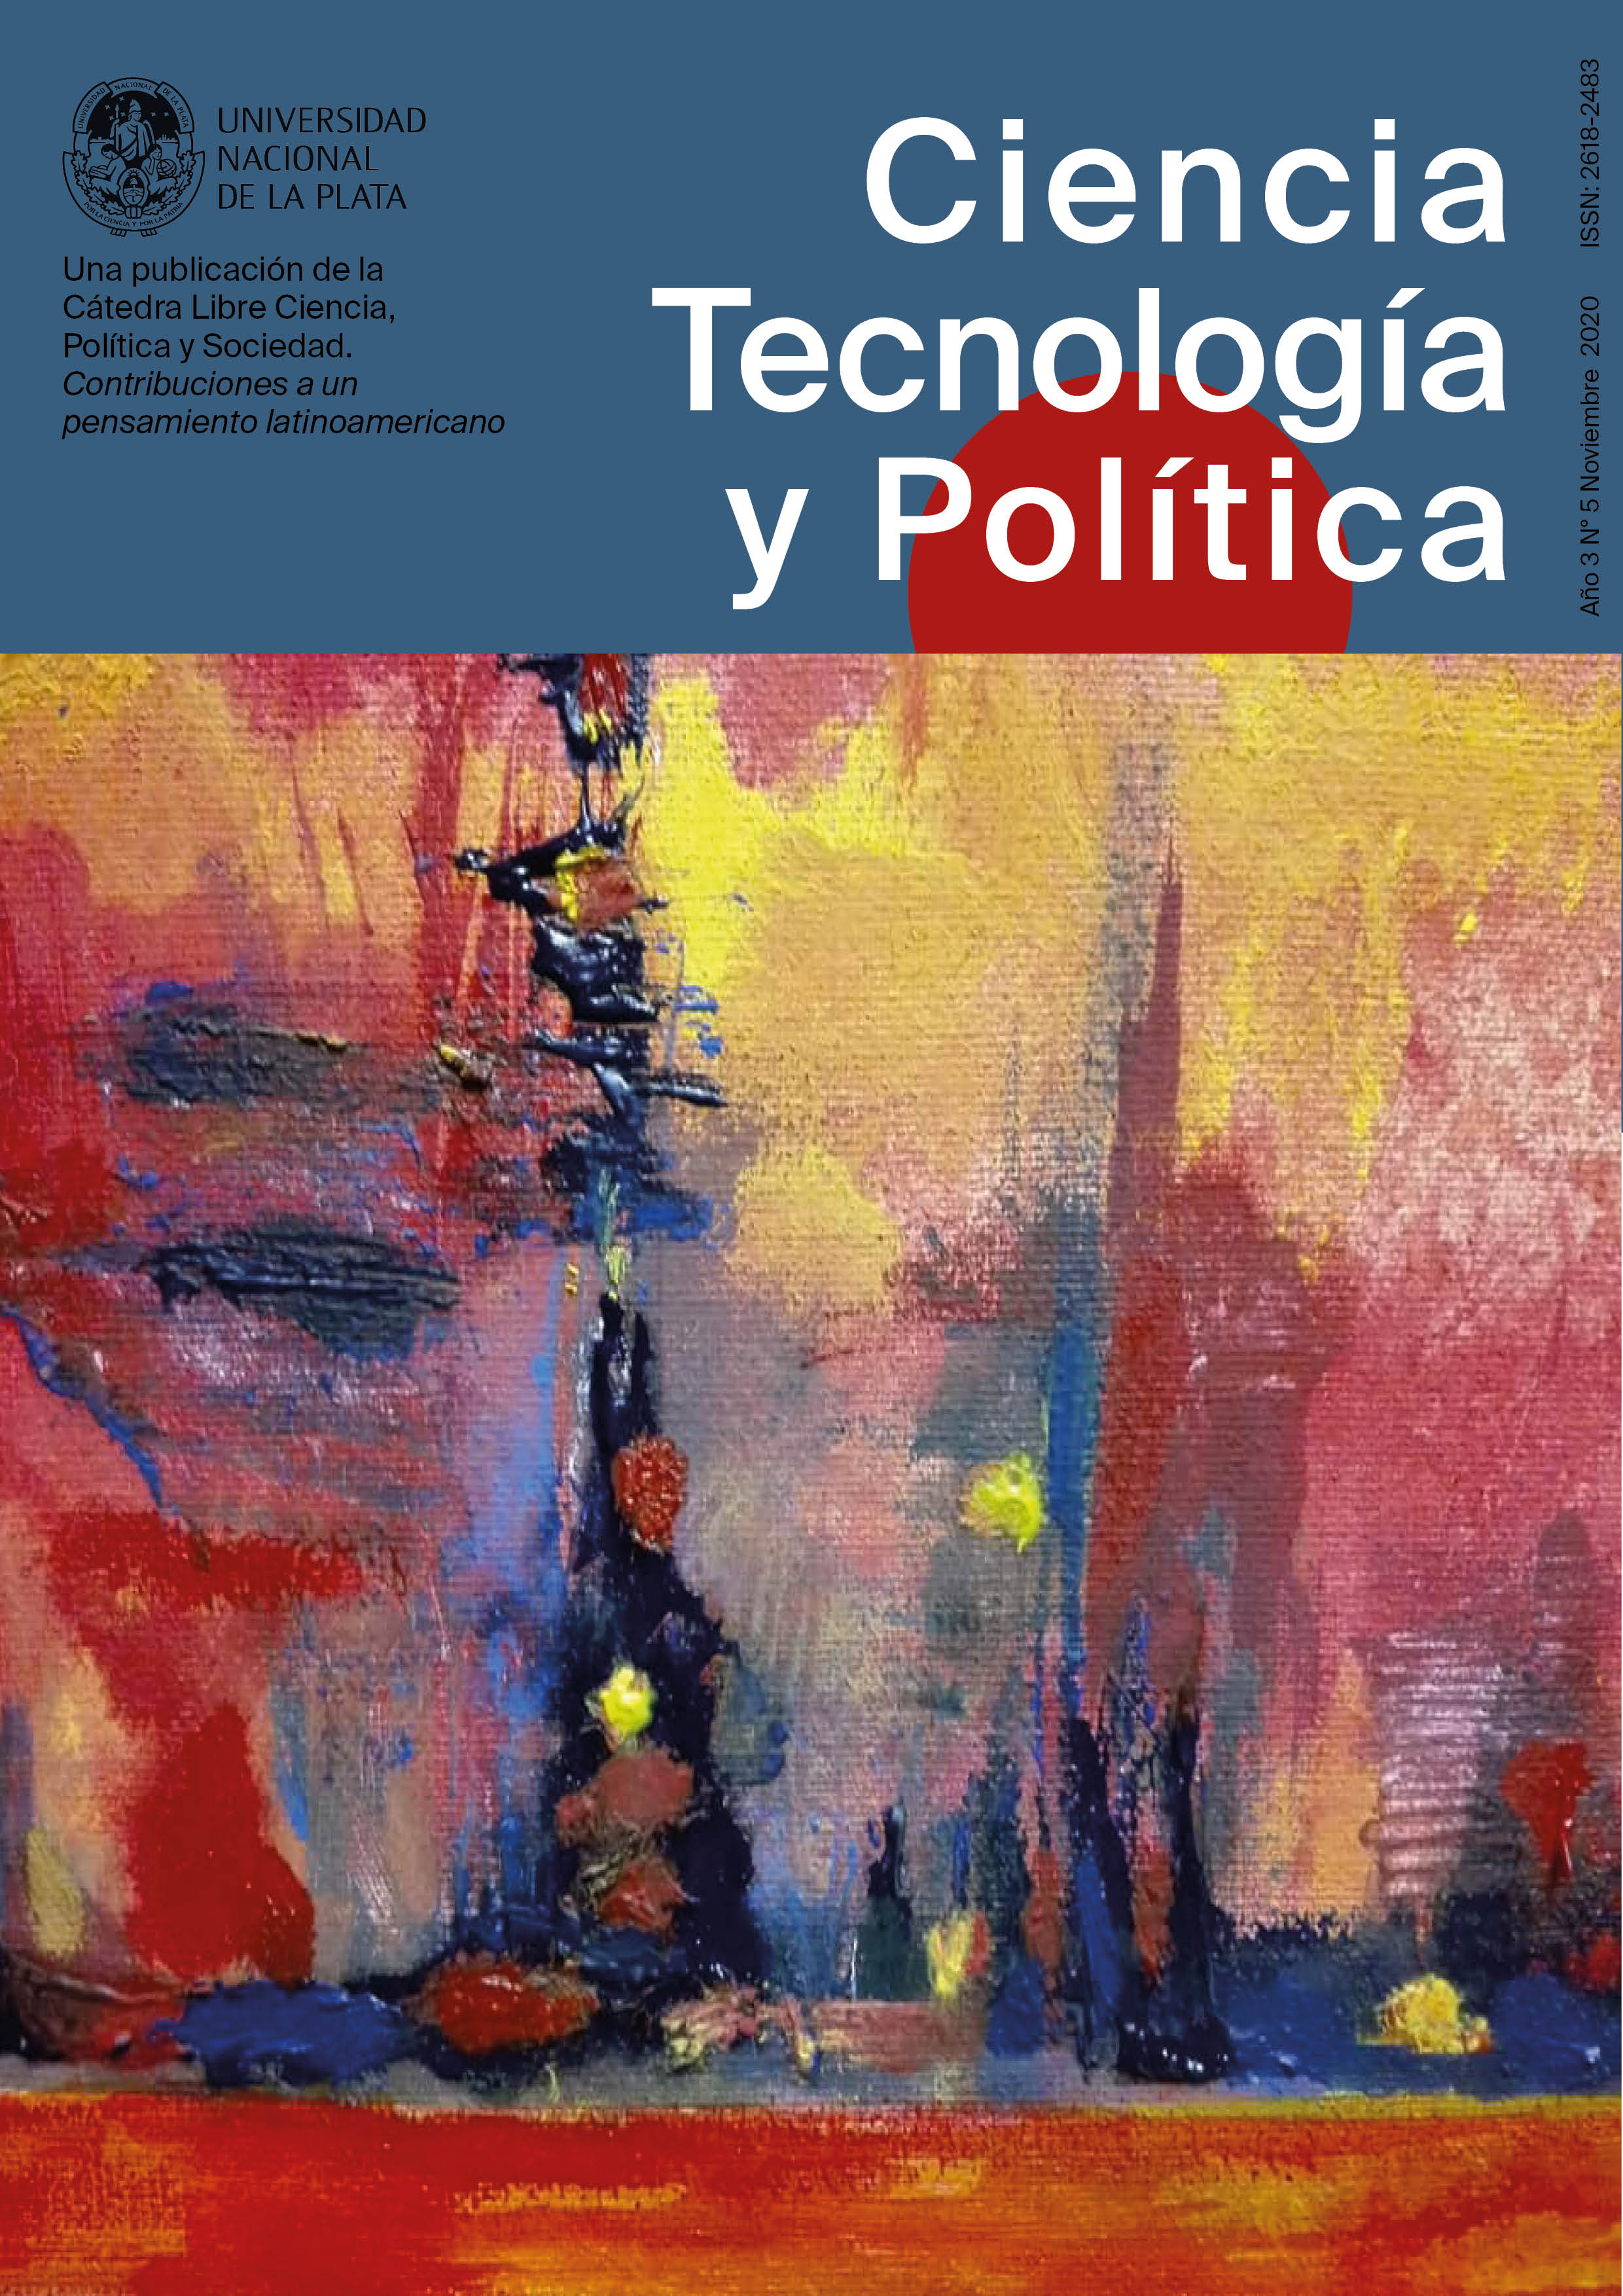 					Ver Vol. 3 Núm. 5 (2020): Ciencia, tecnología y política
				